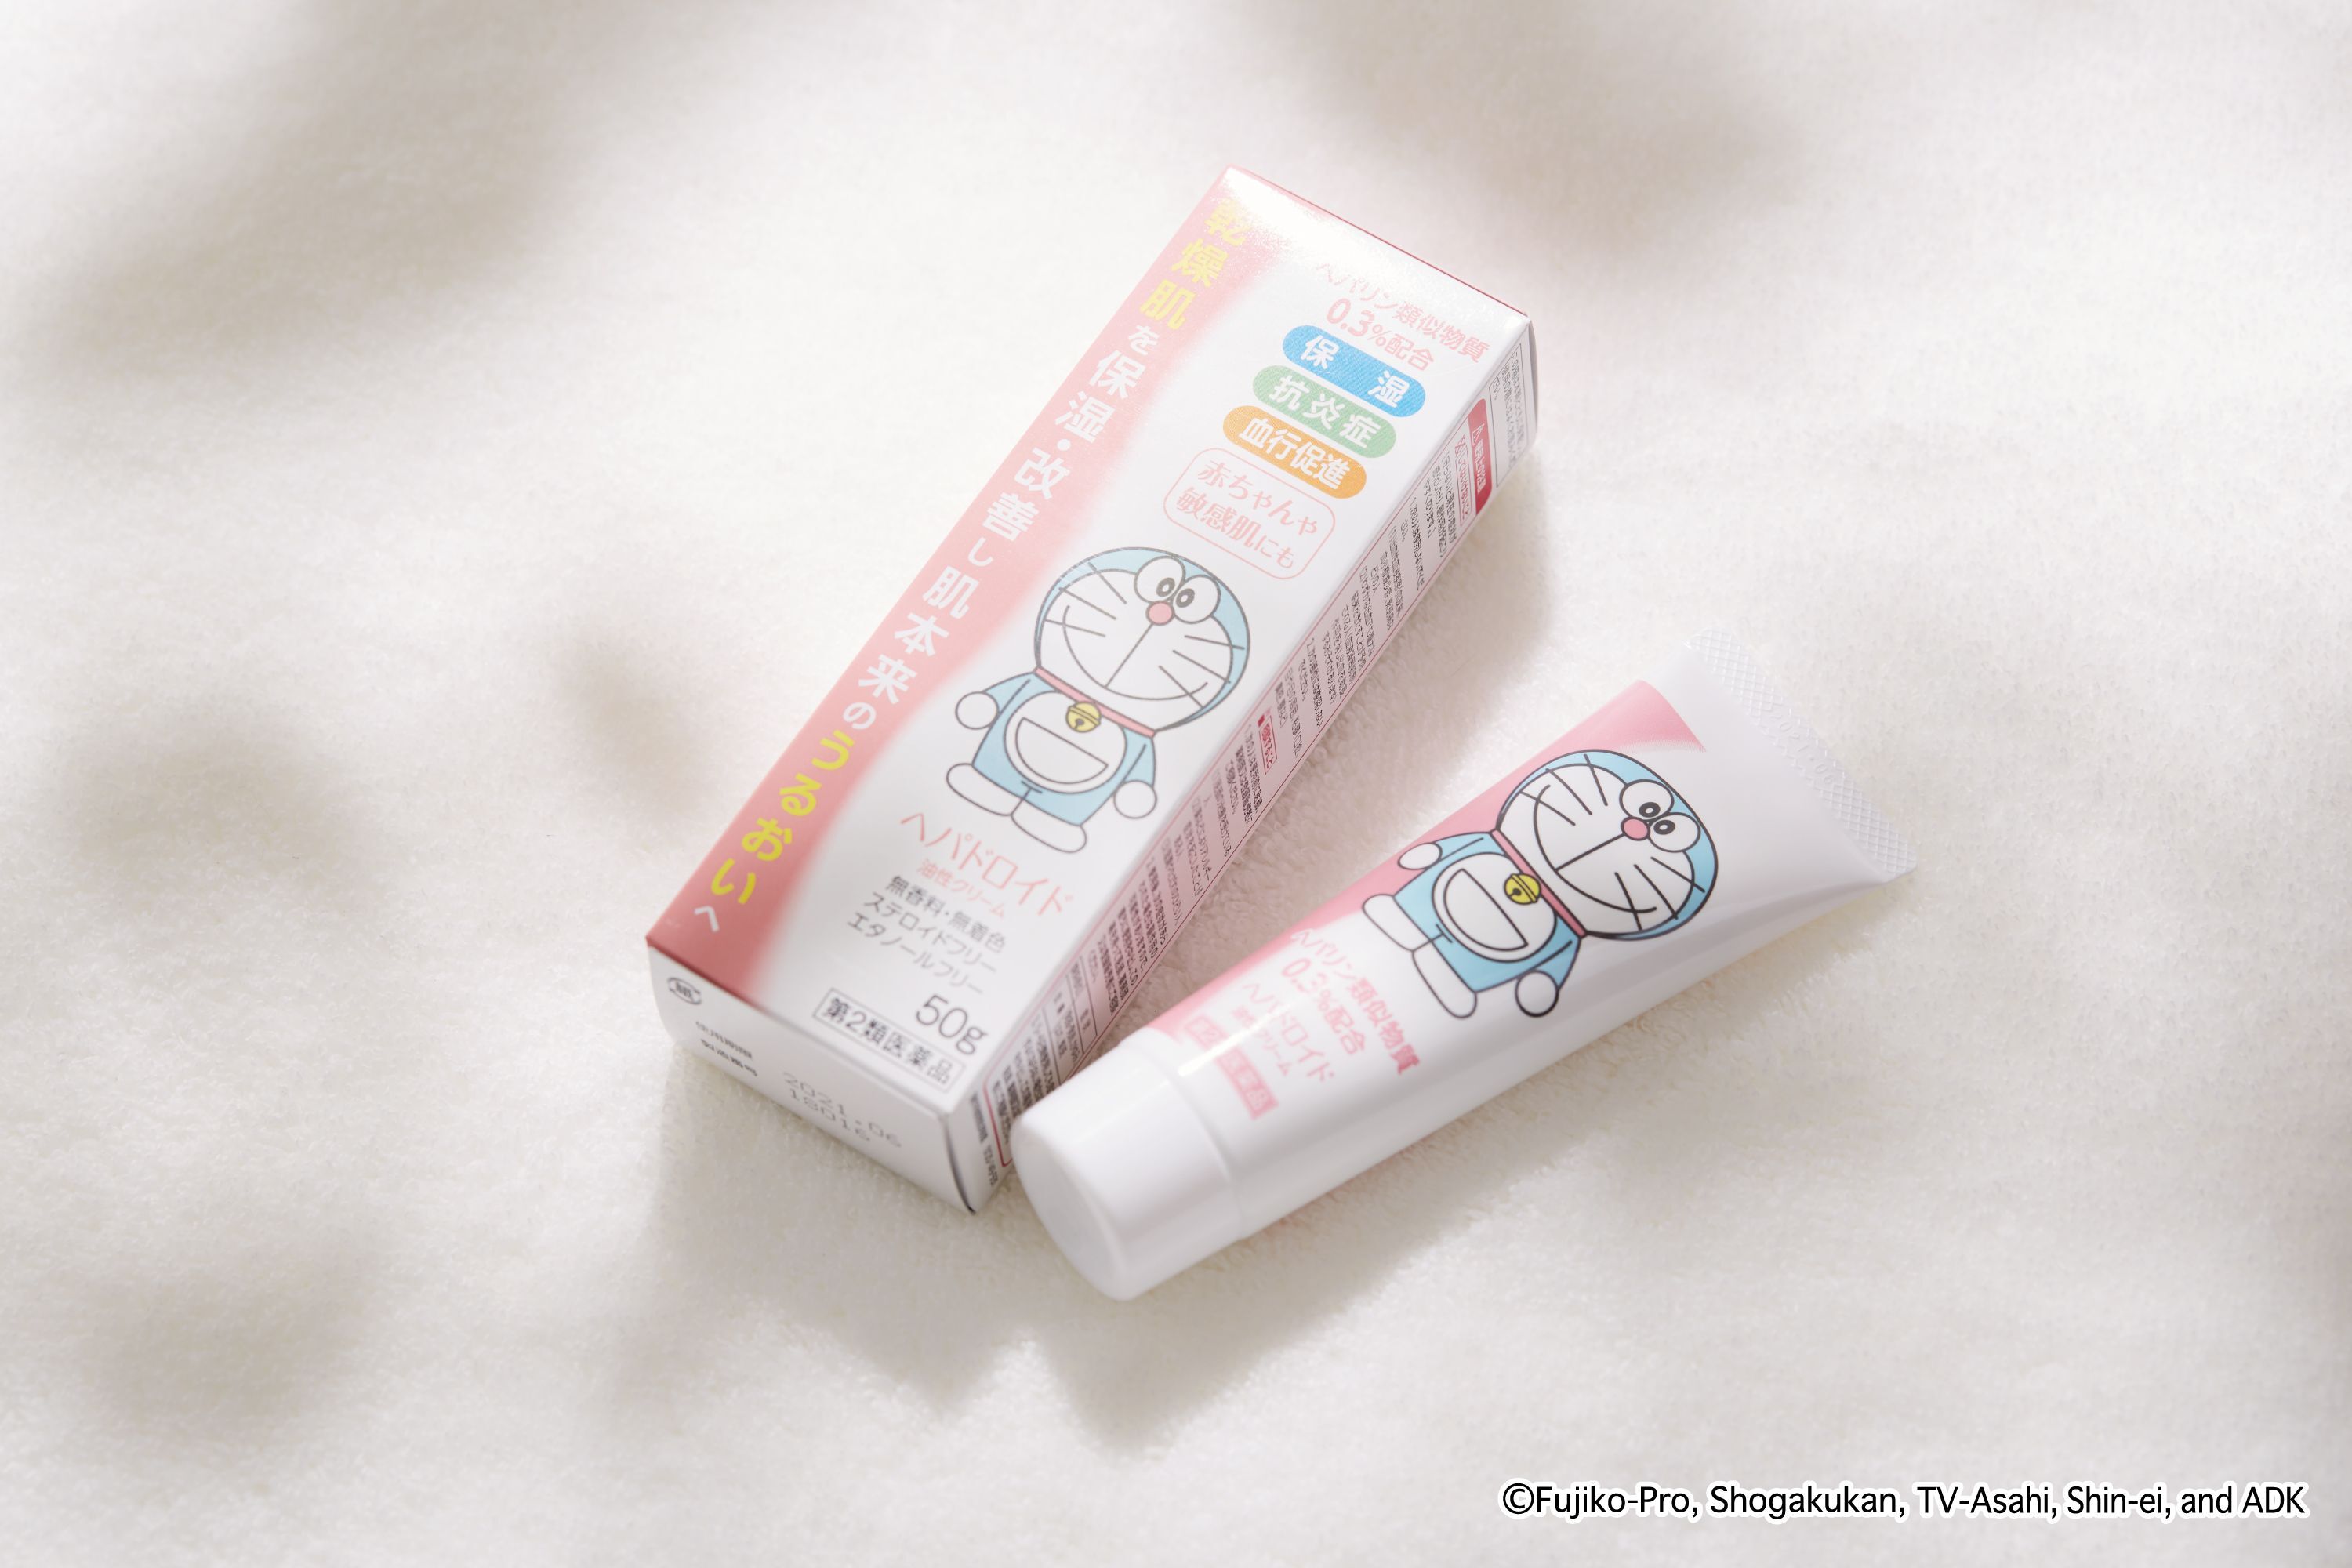 浅田飴 ドラえもんが目印の乾燥性皮膚用薬 ヘパドロイド油性クリーム を9月3日 月 新発売 株式会社浅田飴のプレスリリース